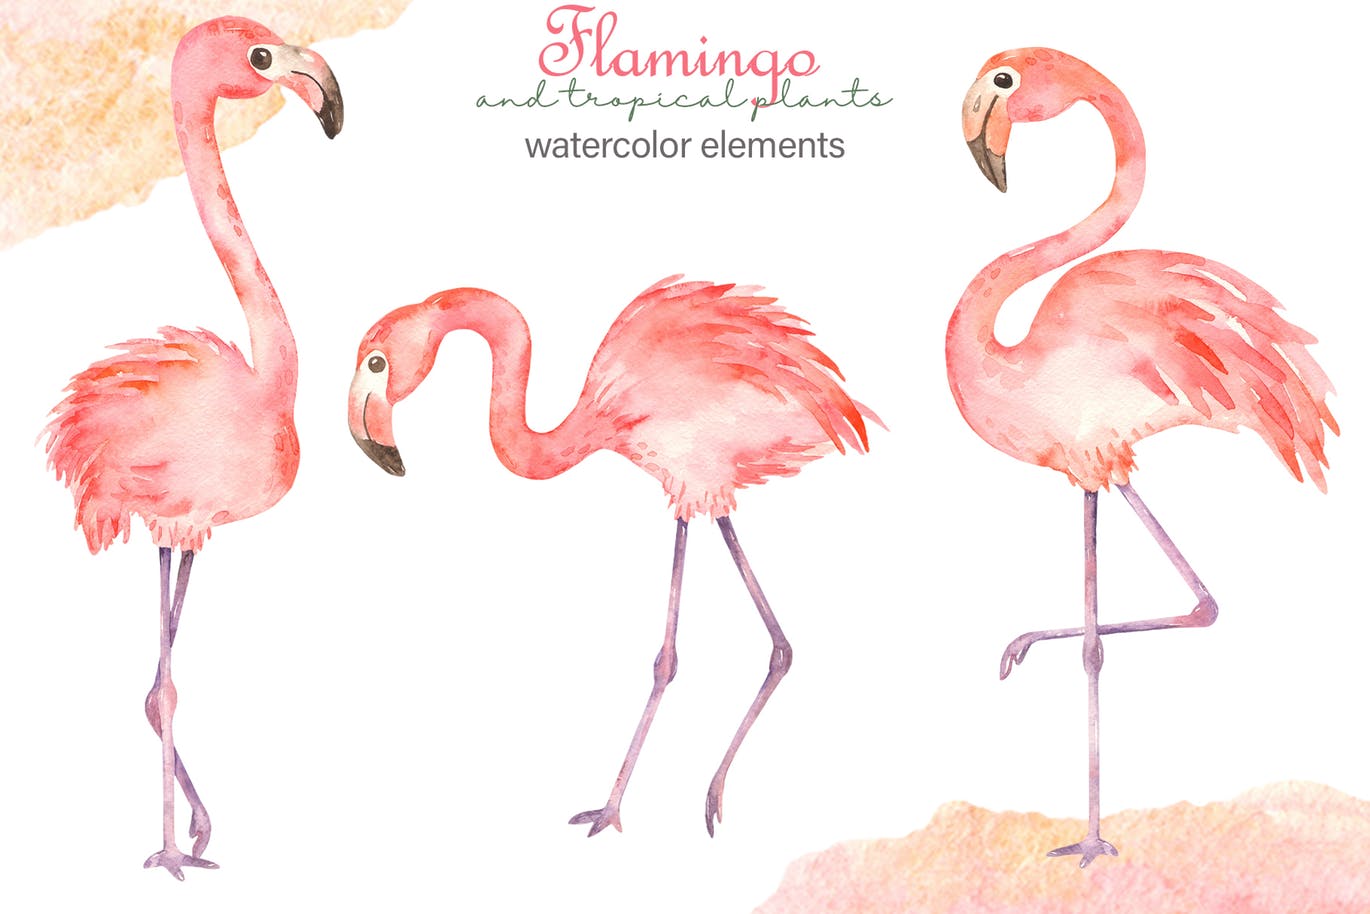 火烈鸟＆热带植物水彩插画素材 Watercolor flamingos and tropical plants插图1